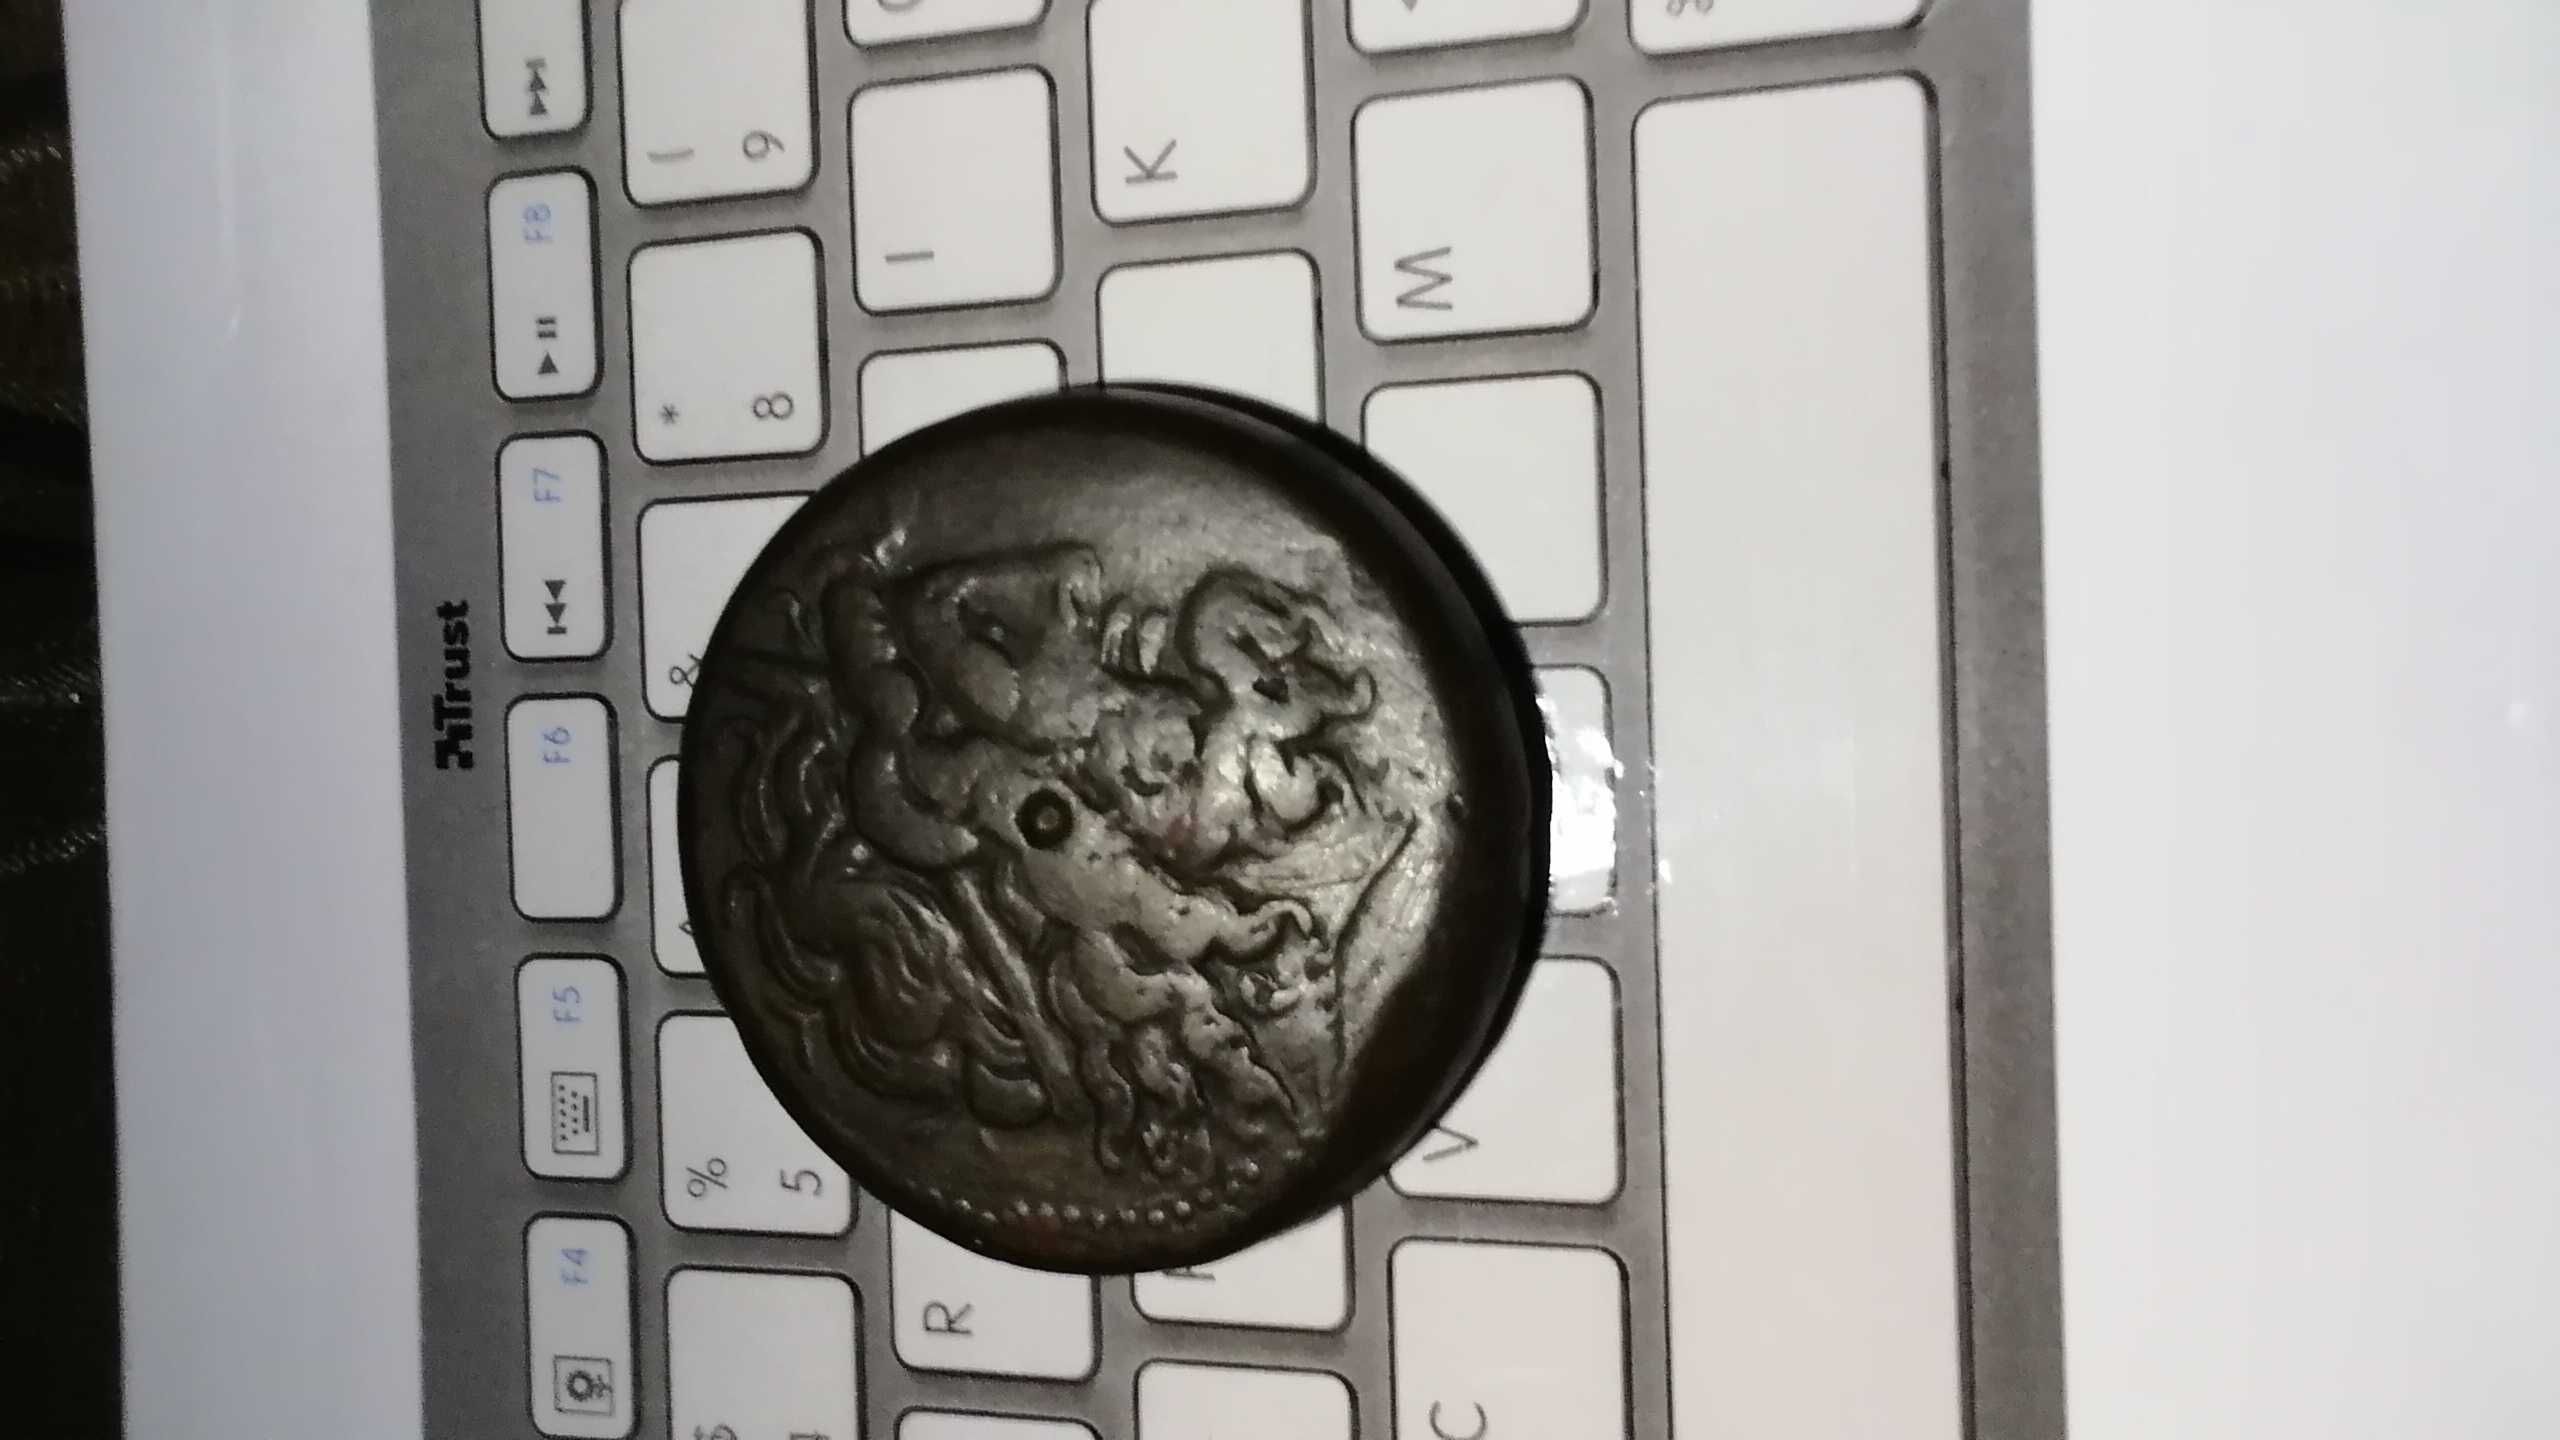 Редкая! Монета - серебро - Птоломей II царь Египта,все на фото! СРОЧНО